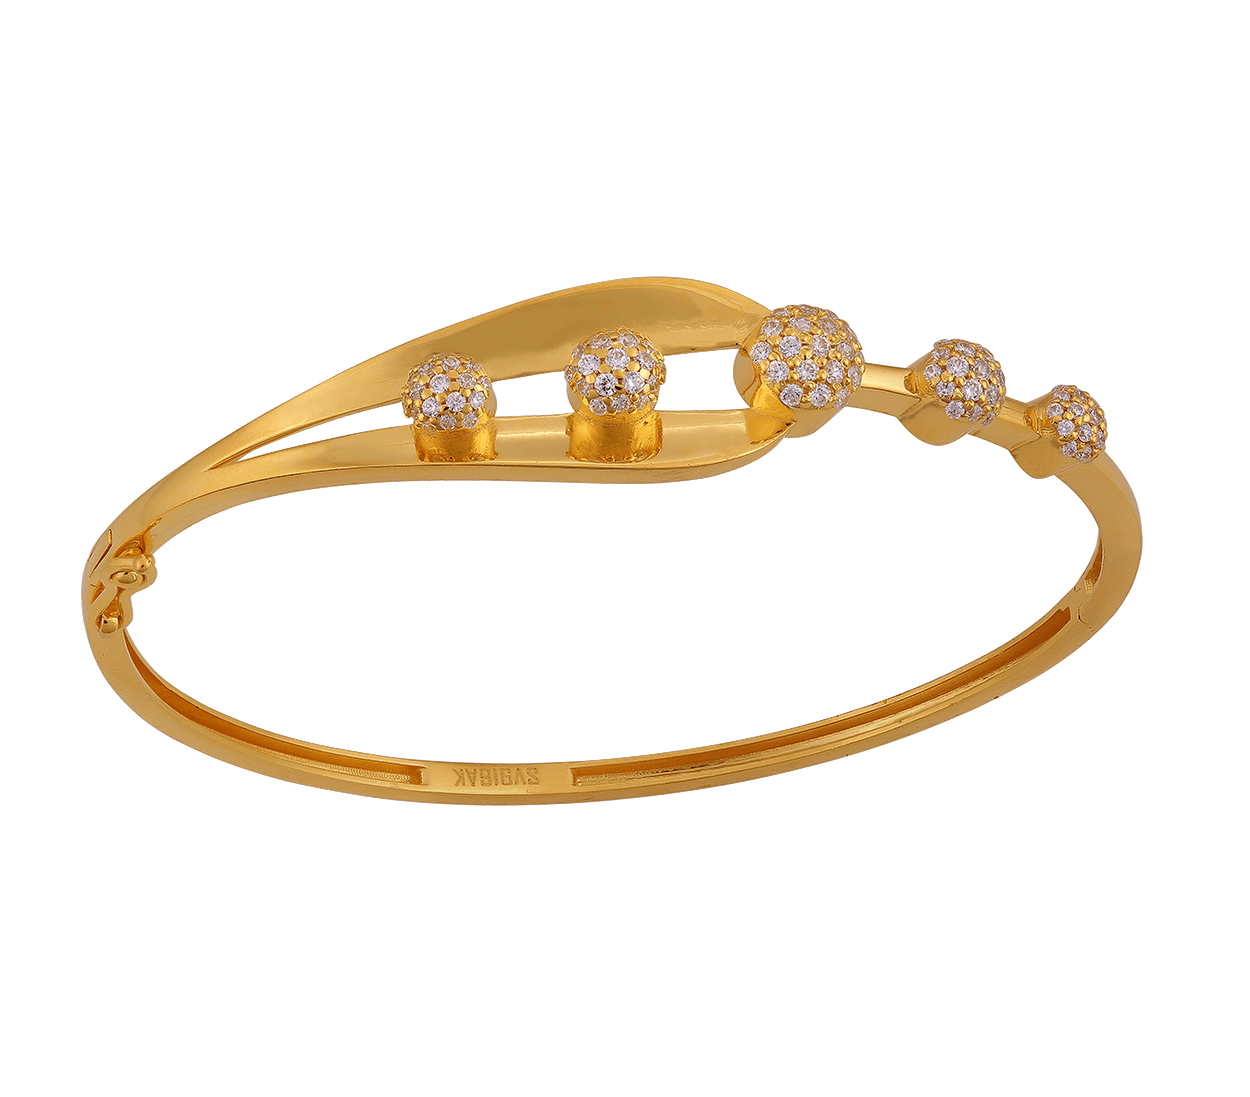 Tanishq Beautiful Gold Kada Designs With Price| Tanishq Gold Kada Bangles/Kada  Bracelets With Price| - YouTube